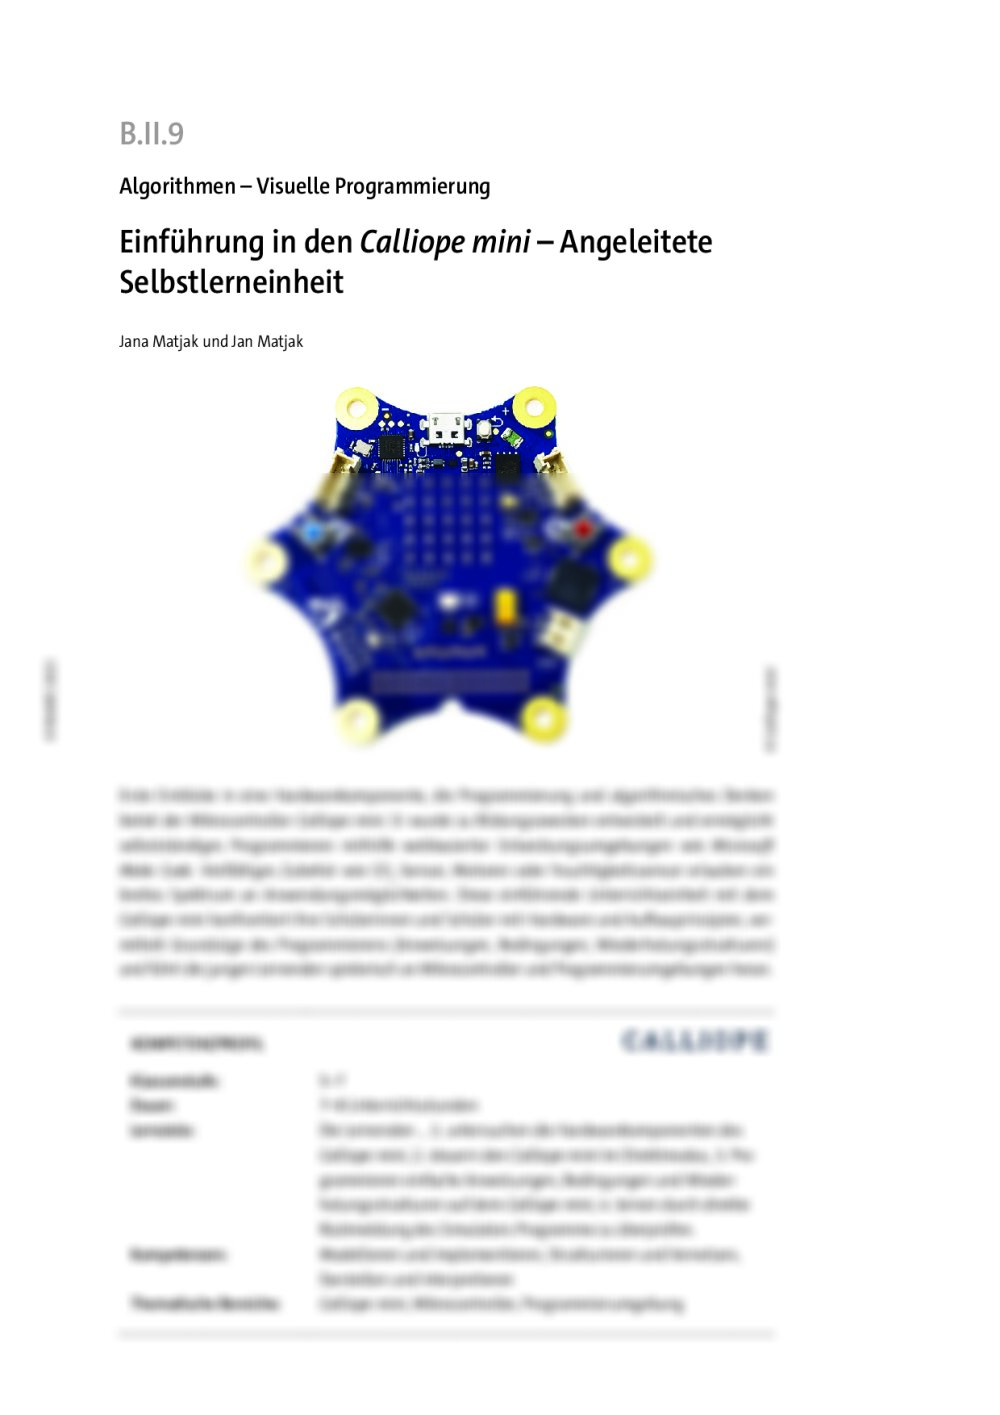 Einführung in den Mikrocontoller Calliope mini - Seite 1